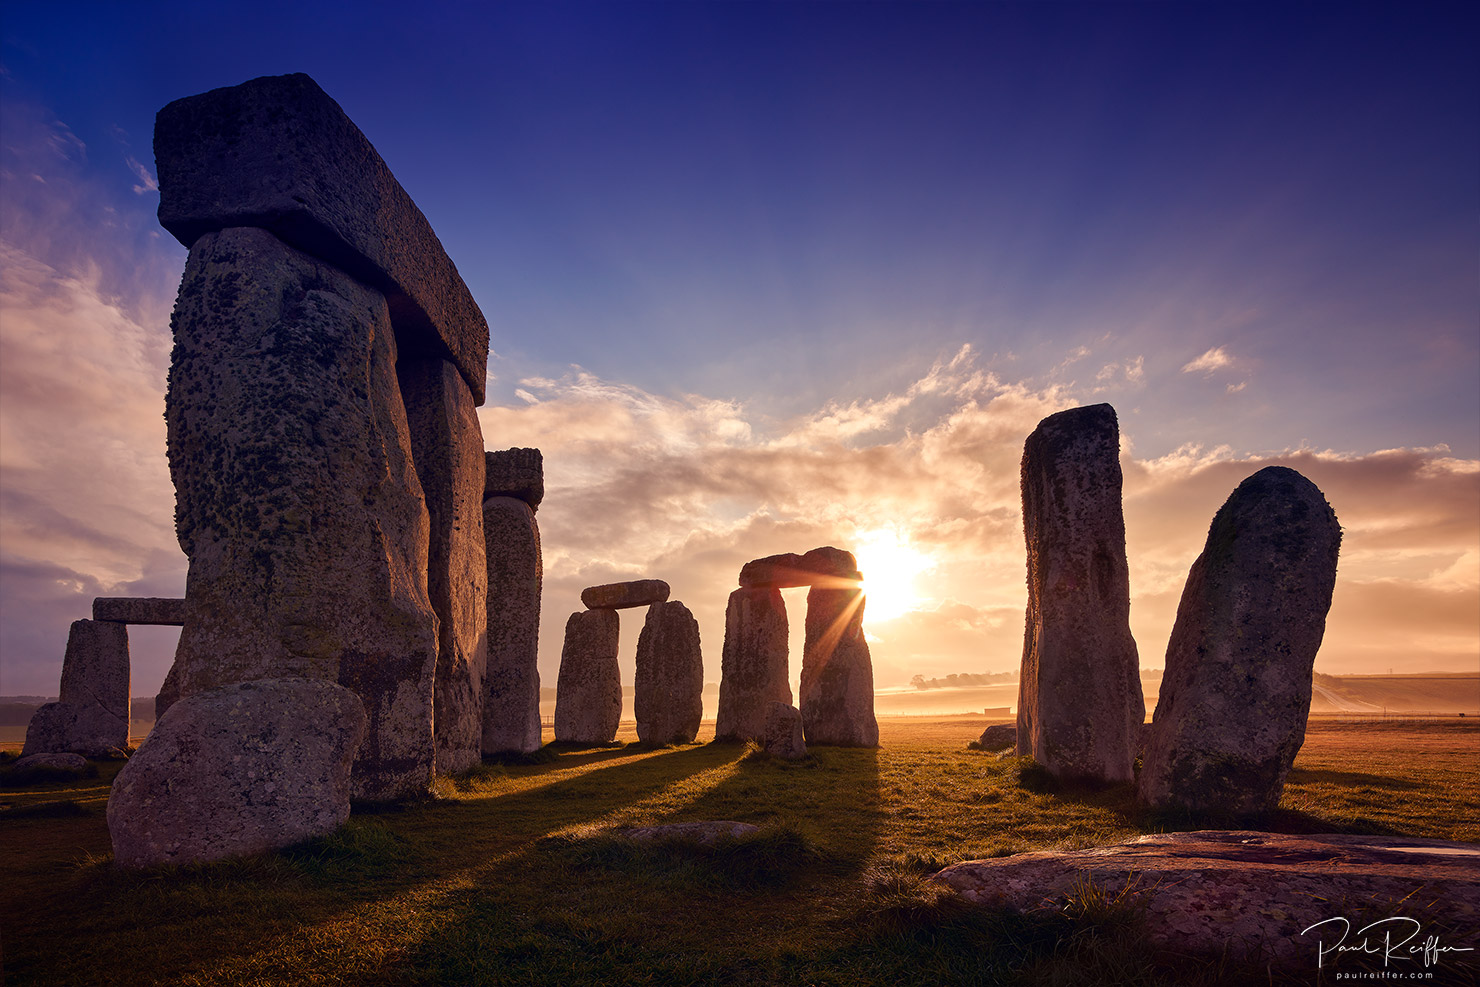 sunrise over stonehenge flare inner circle stone henge inside paul reiffer summer 2017 british photographer